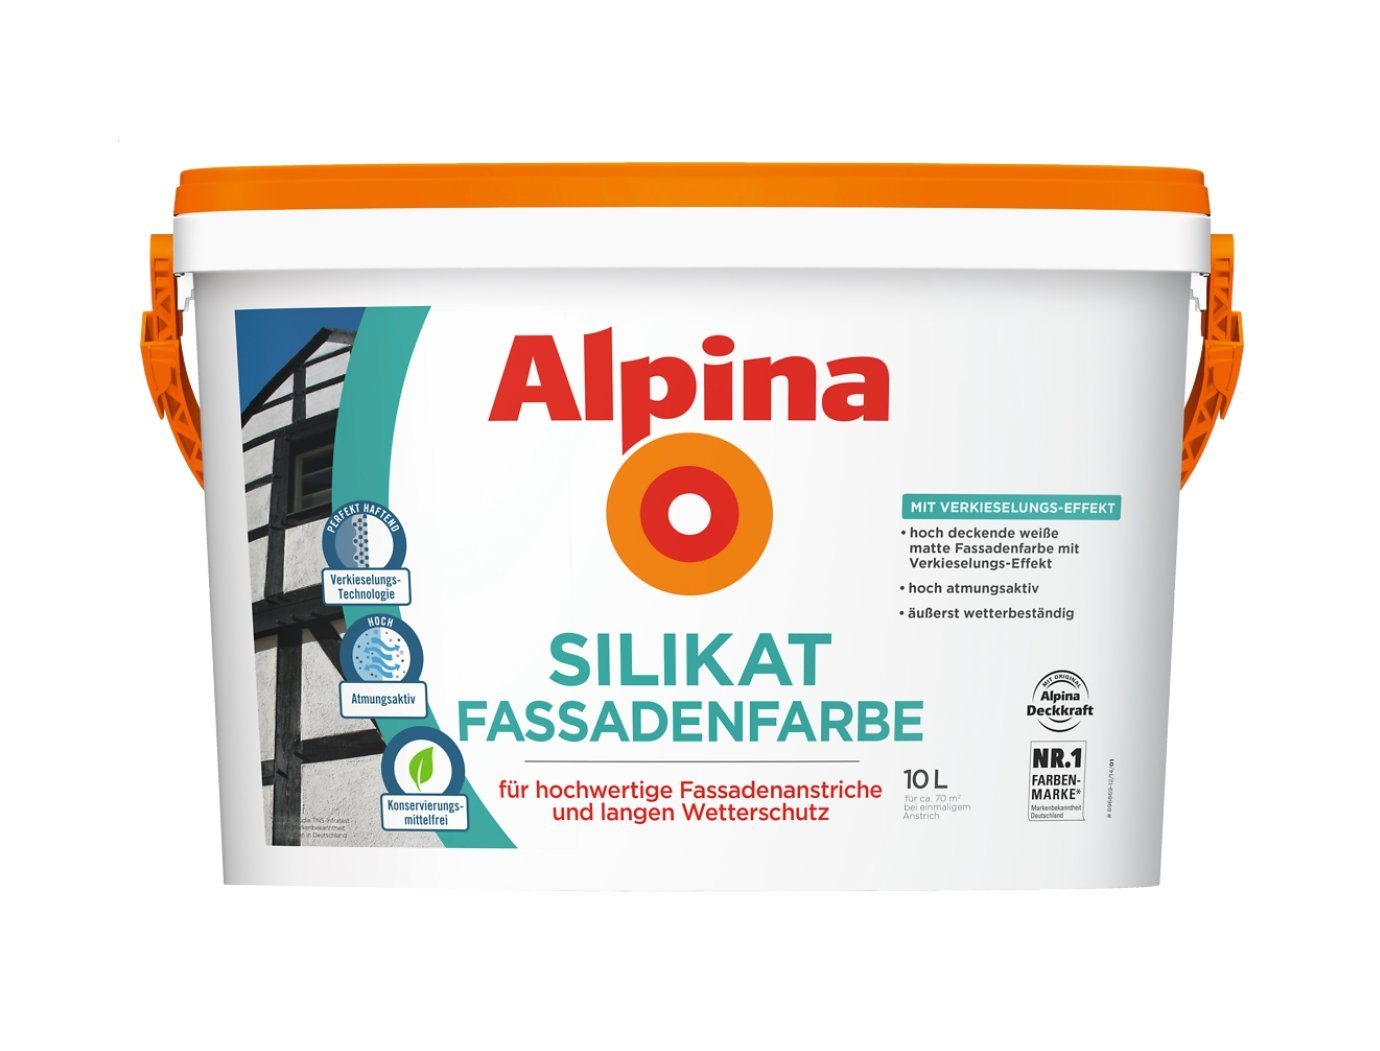 Alpina Fassadenfarbe 10 Liter Silikat Fassadenfarbe Weiß von Alpina